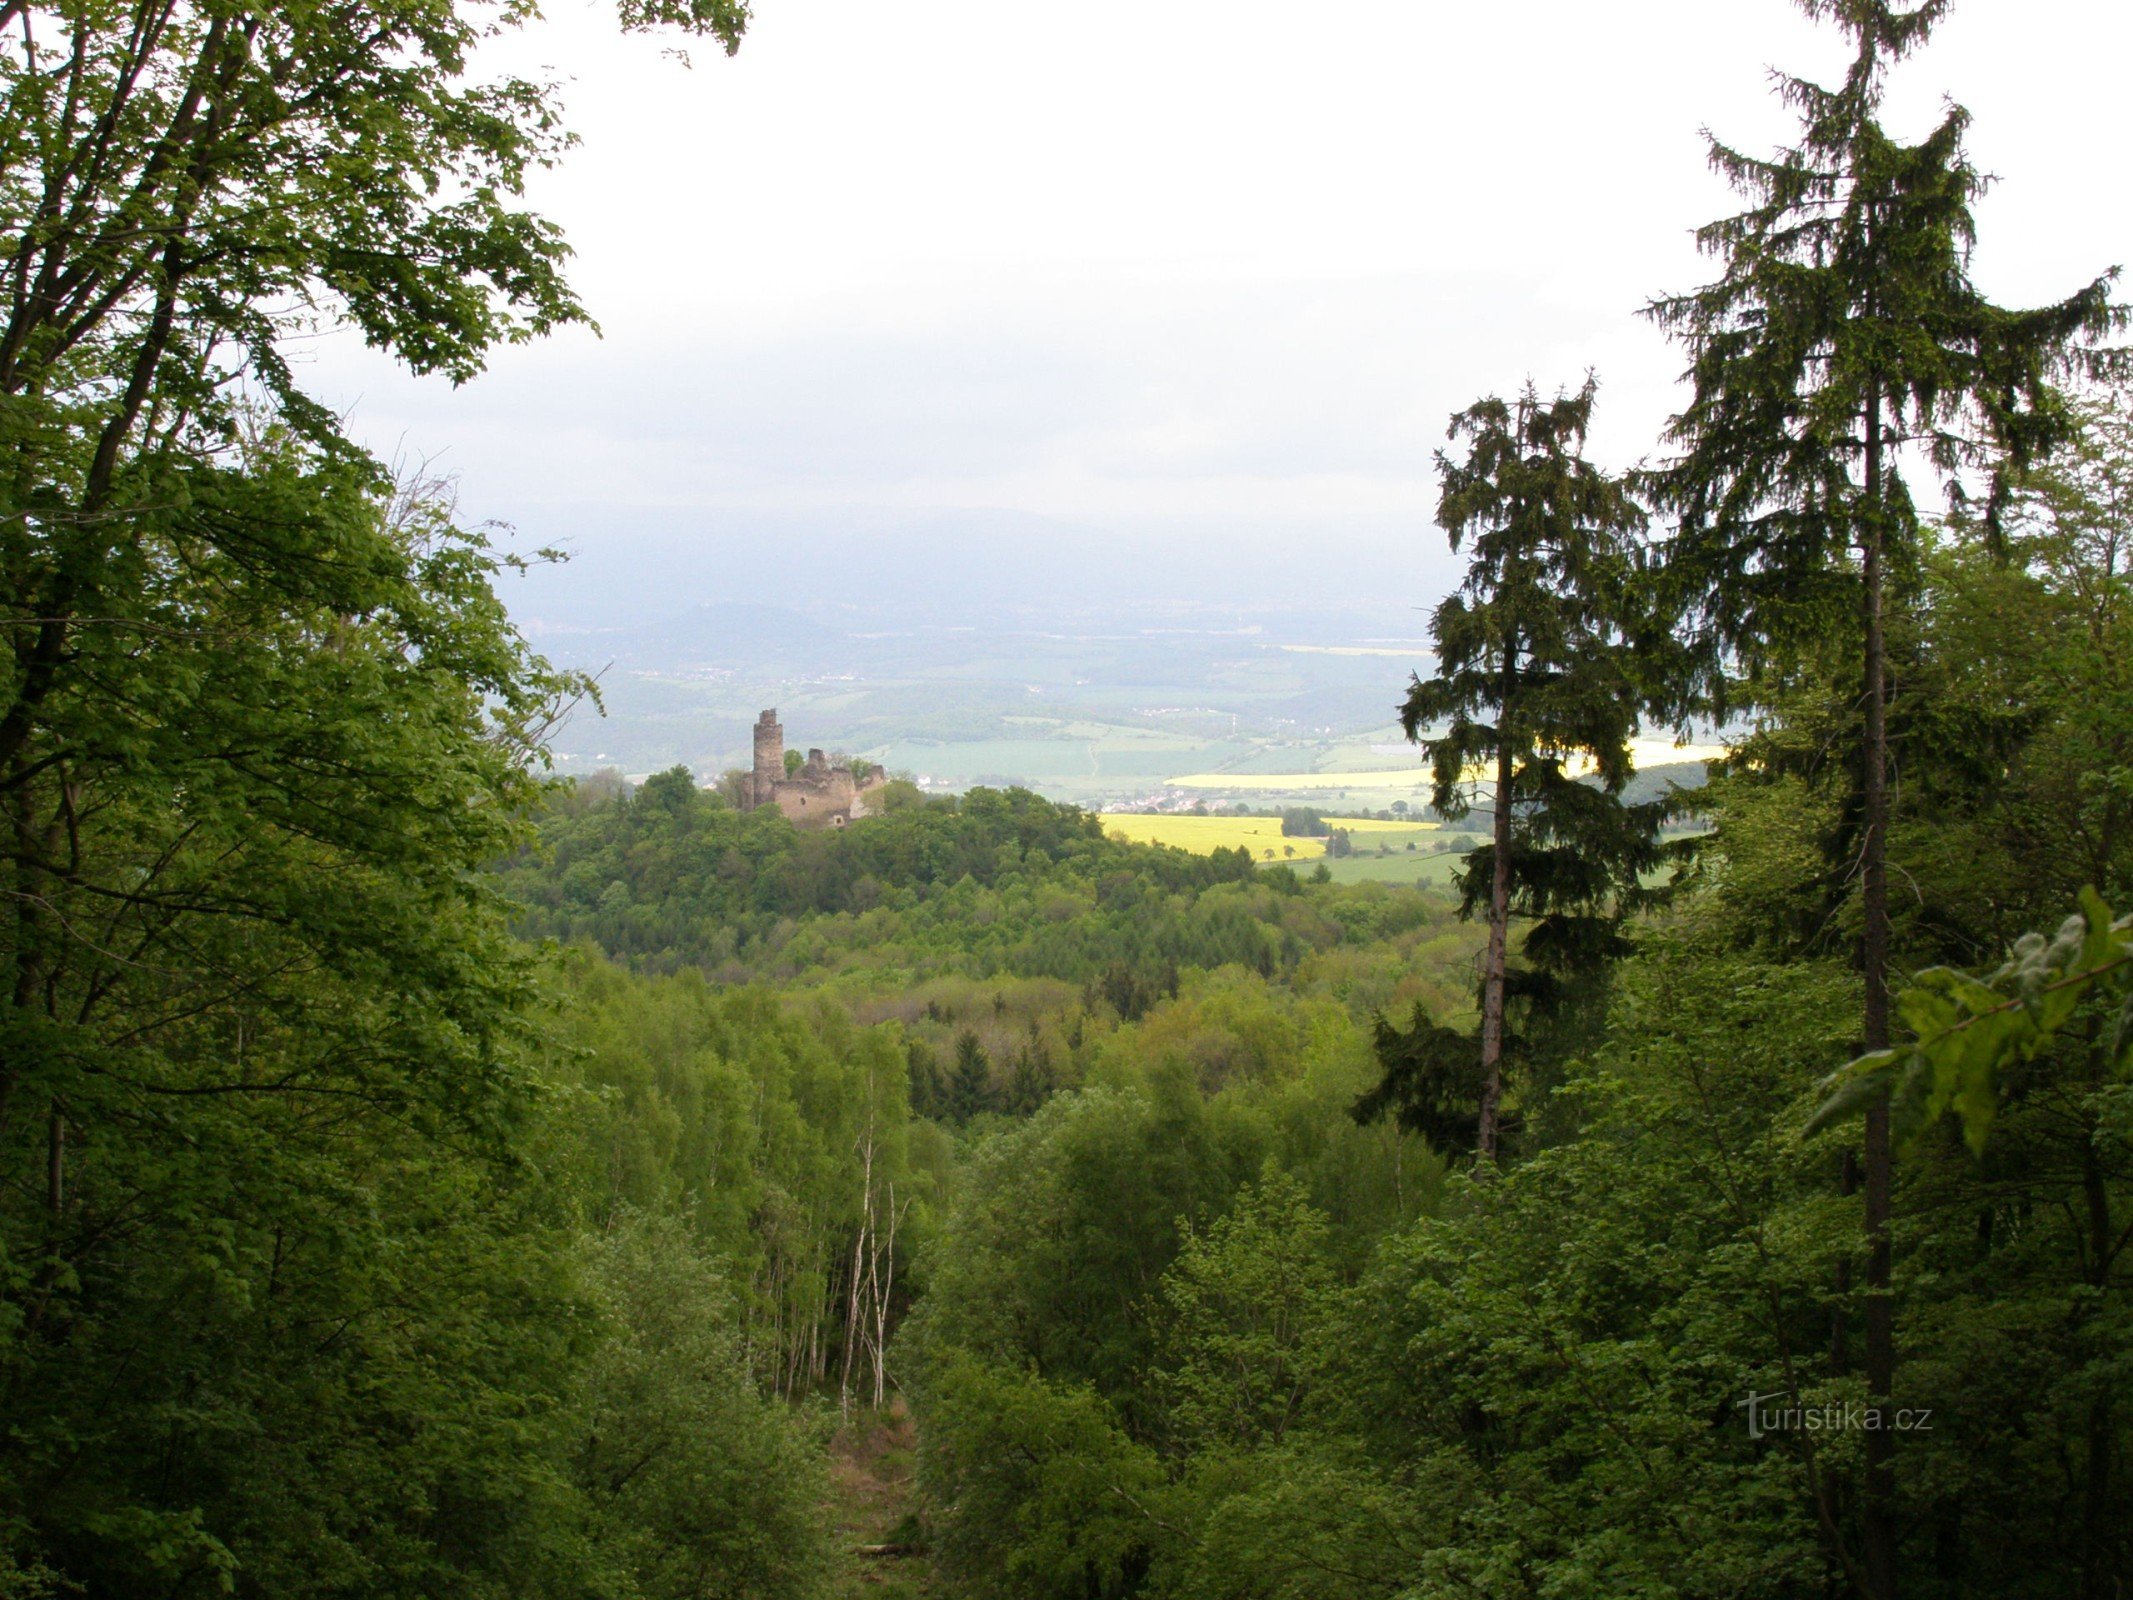 Blick auf die Burg Sukoslav vom Erdrutsch